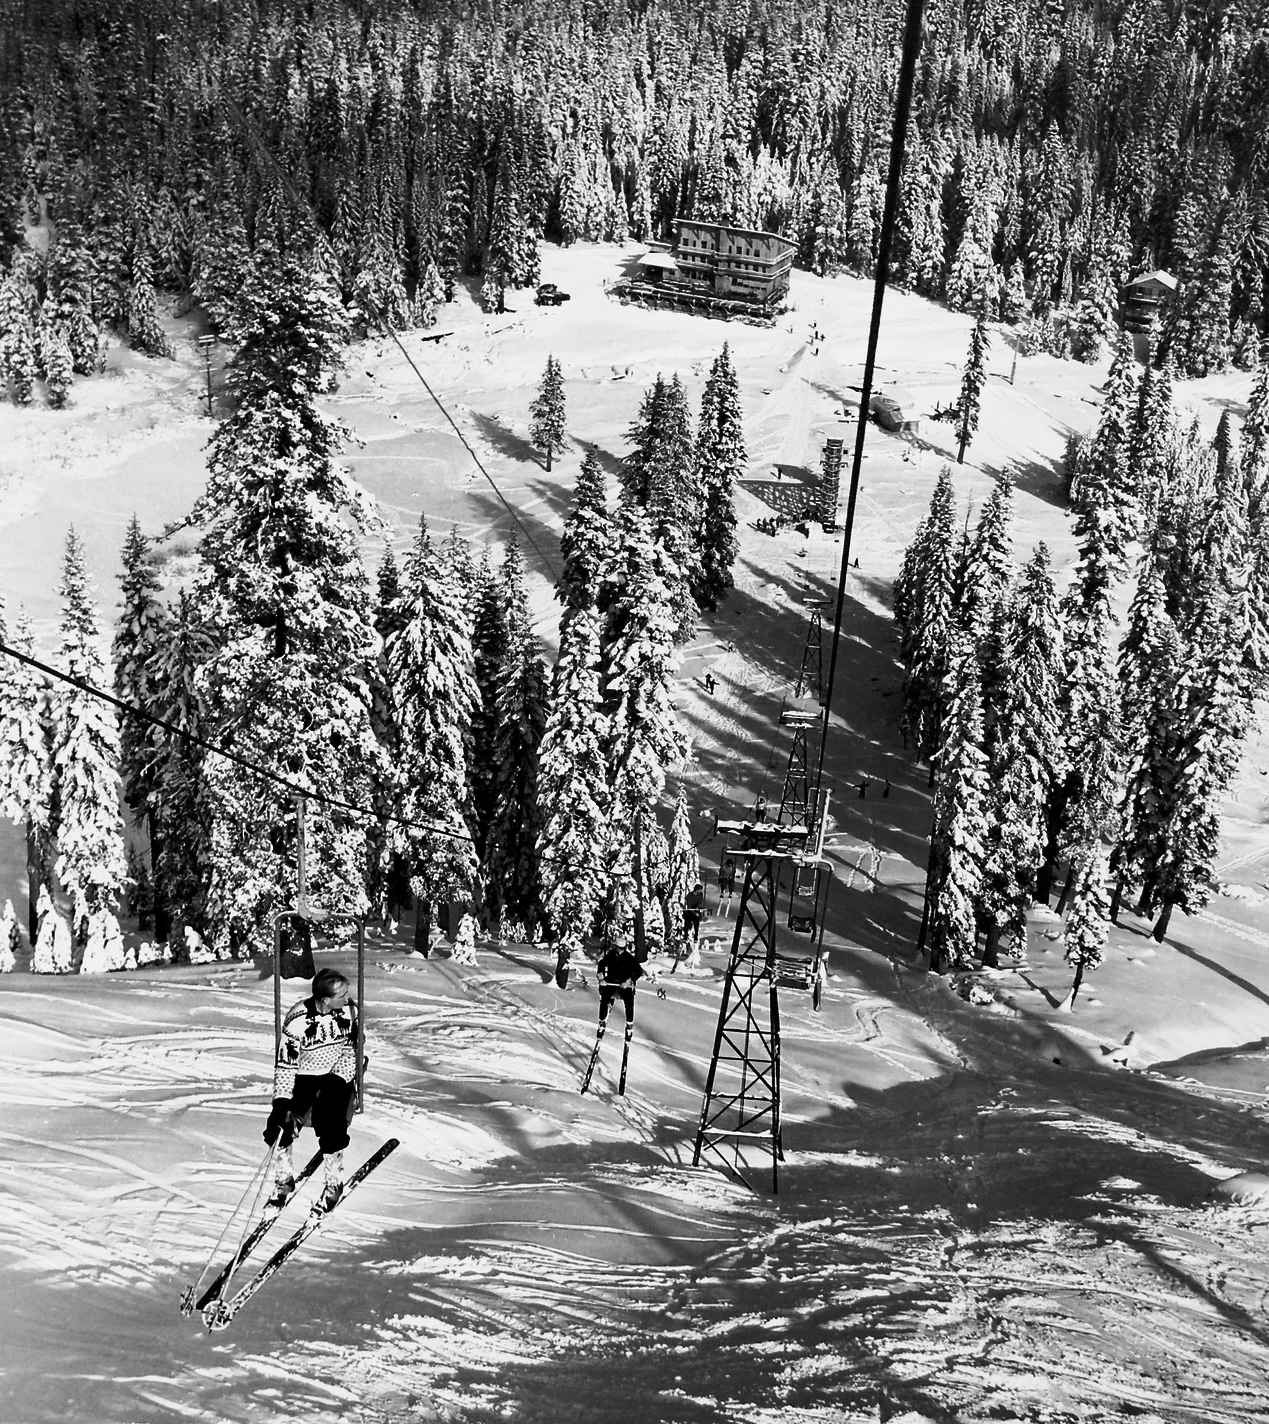 Sugar Bowl resort sparked ski industry in Sierra